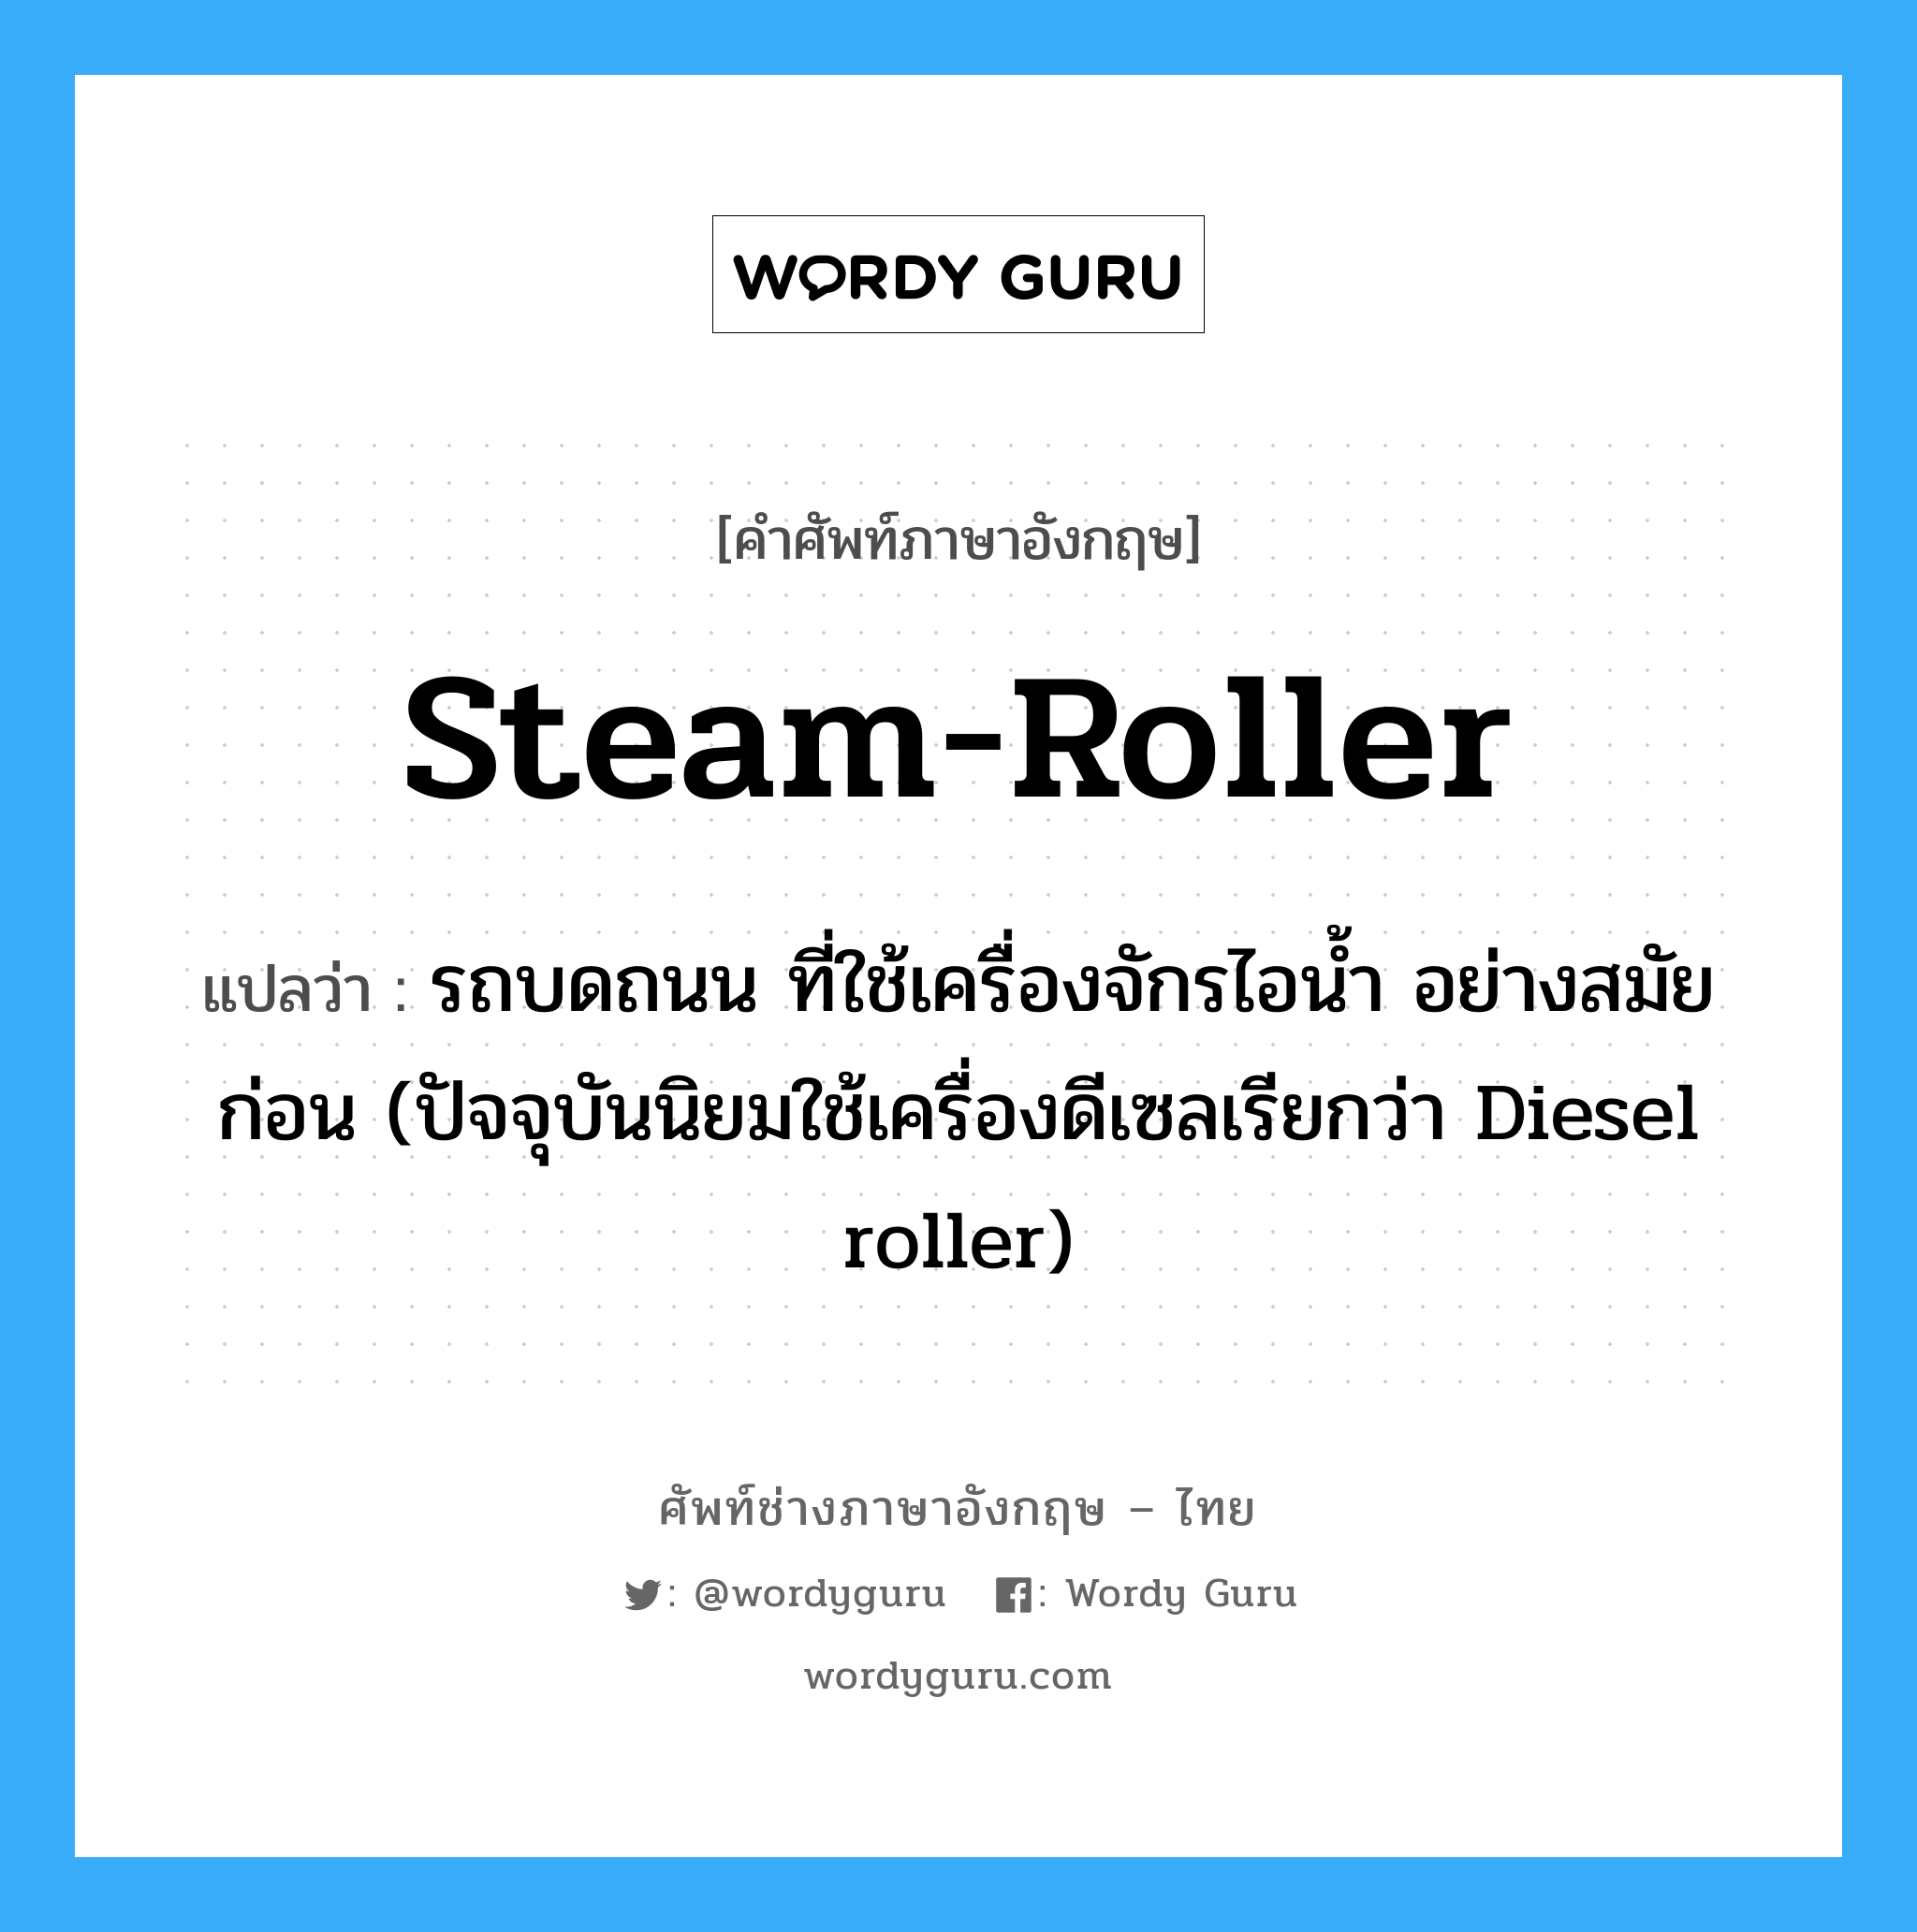 steam-roller แปลว่า?, คำศัพท์ช่างภาษาอังกฤษ - ไทย steam-roller คำศัพท์ภาษาอังกฤษ steam-roller แปลว่า รถบดถนน ที่ใช้เครื่องจักรไอน้ำ อย่างสมัยก่อน (ปัจจุบันนิยมใช้เครื่องดีเซลเรียกว่า Diesel roller)